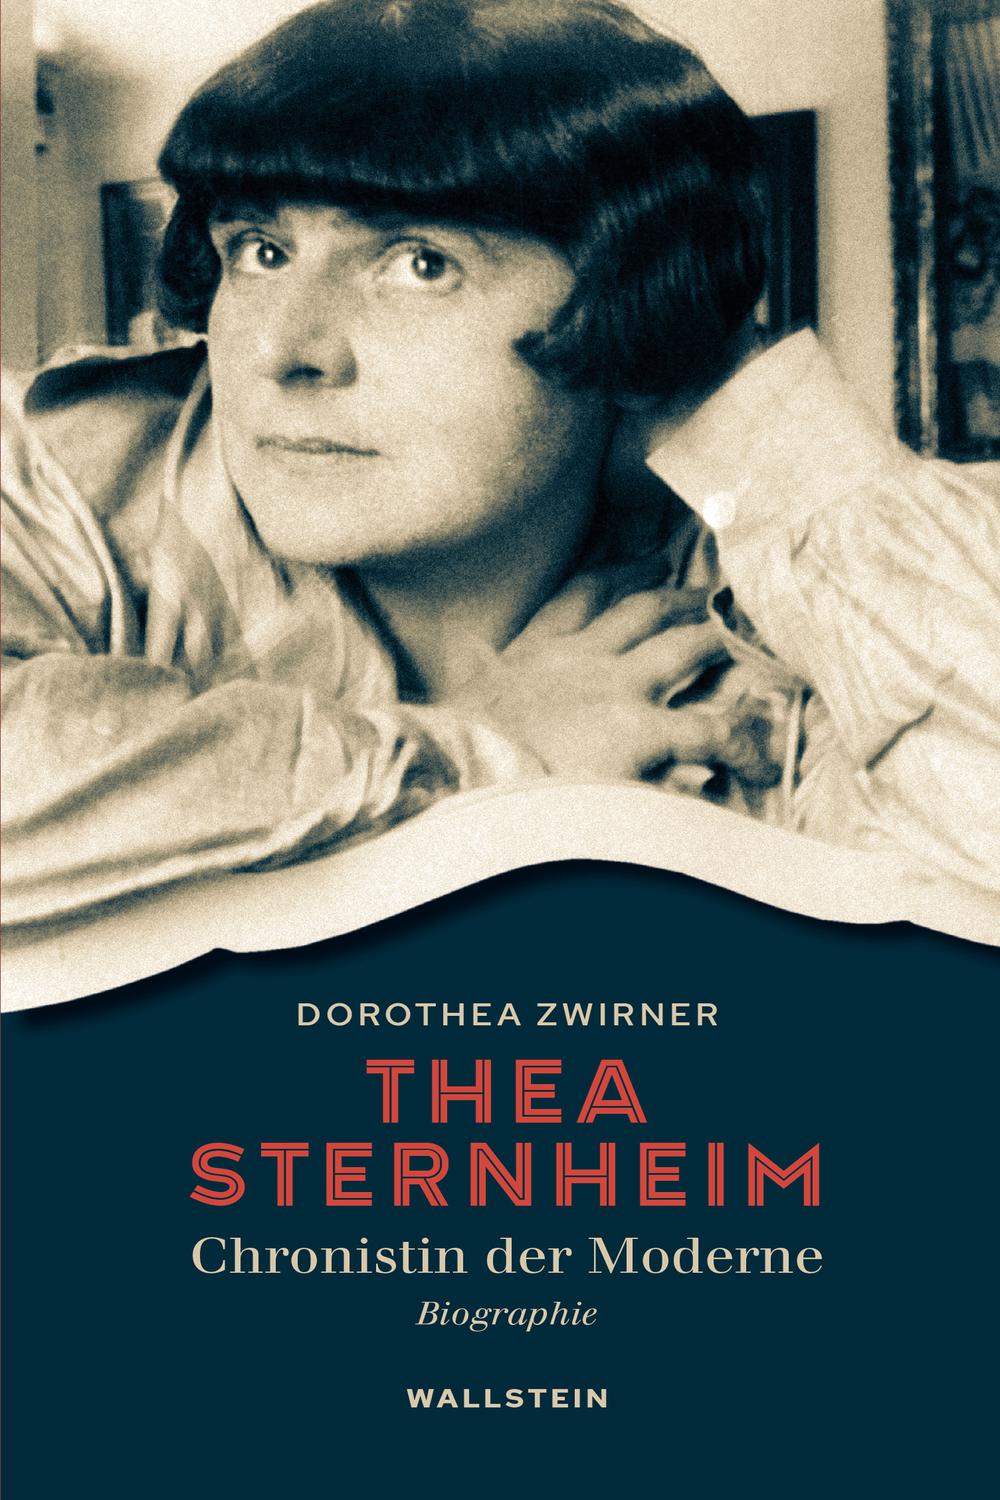 Thea Sternheim - Chronistin der Moderne - Dorothea Zwirner